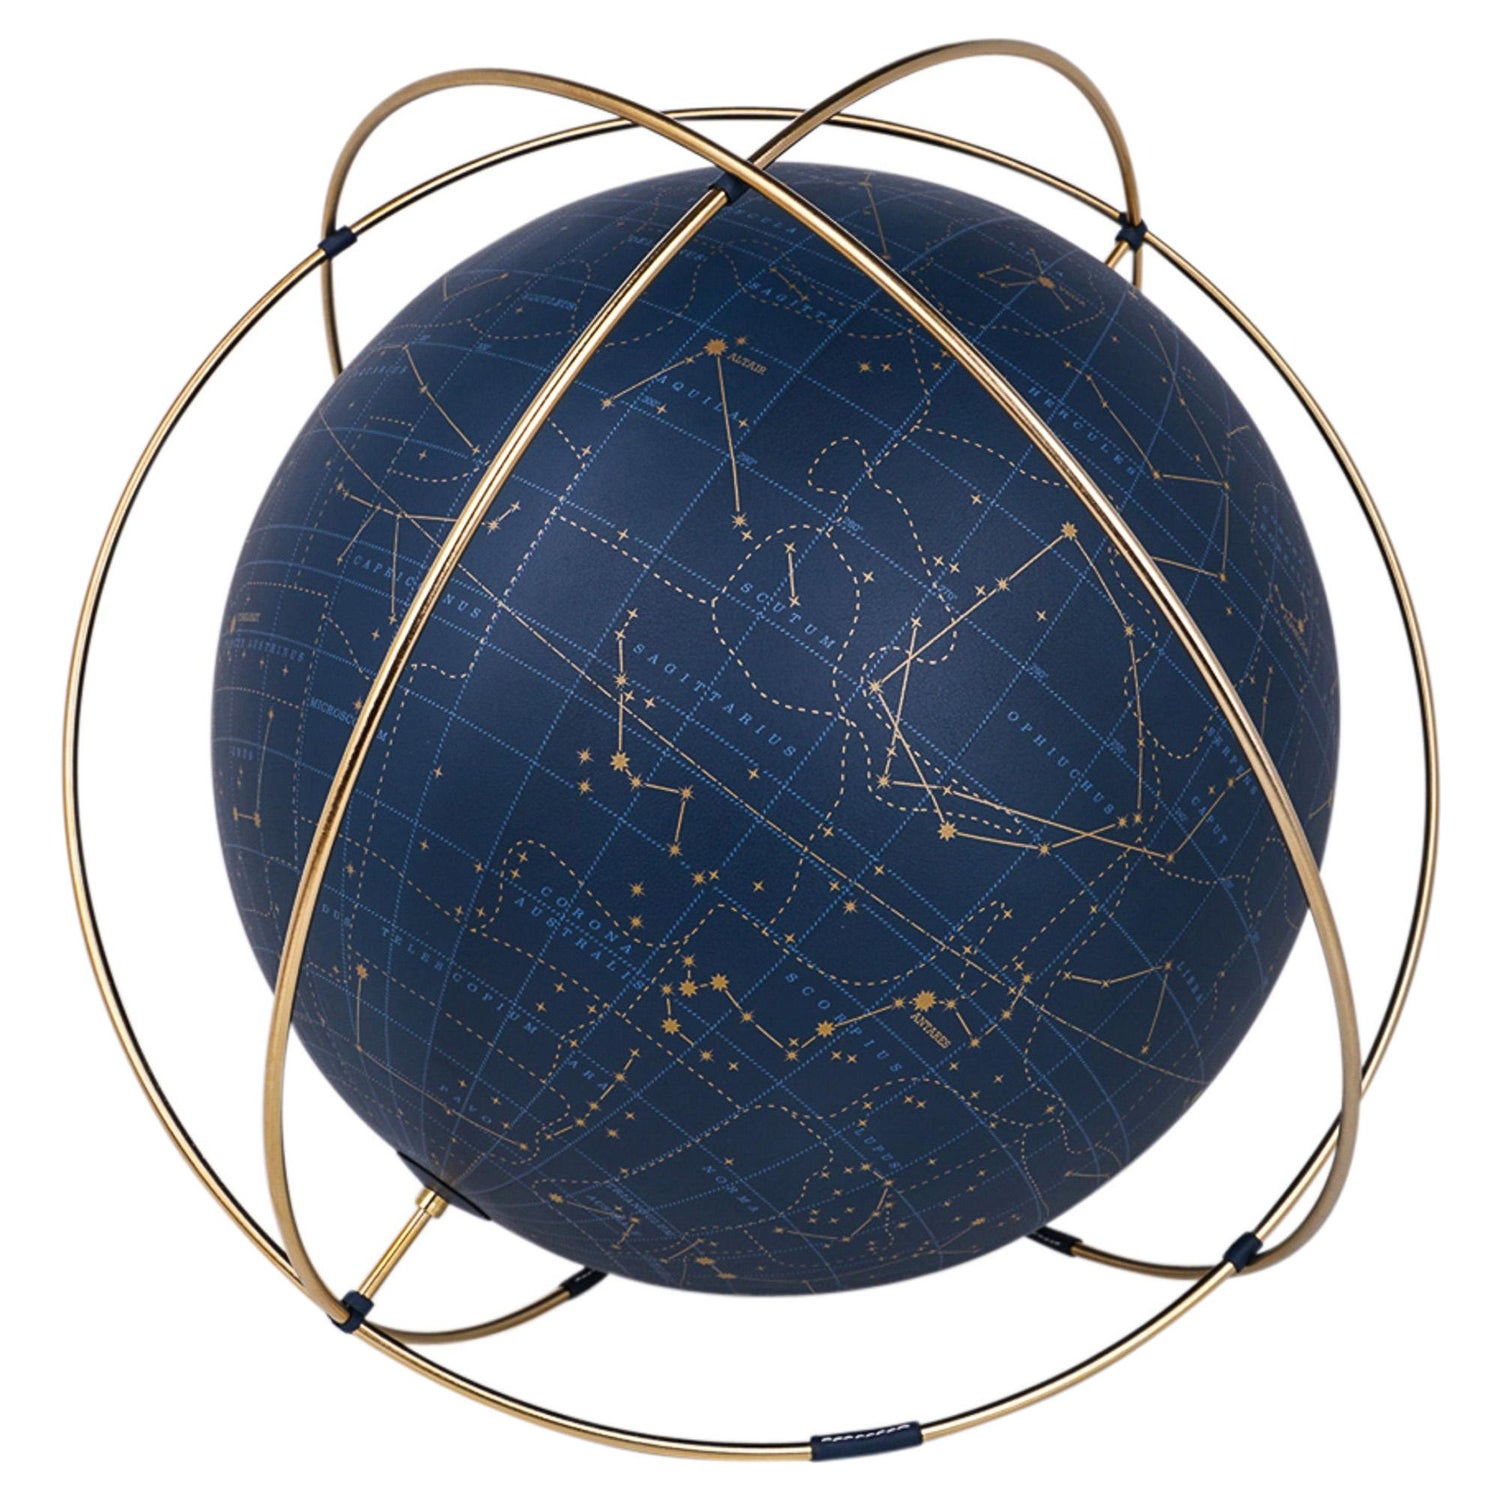 The Vintage Store - LOUIS VUITTON Snow Globe 2013 : Aero globe is